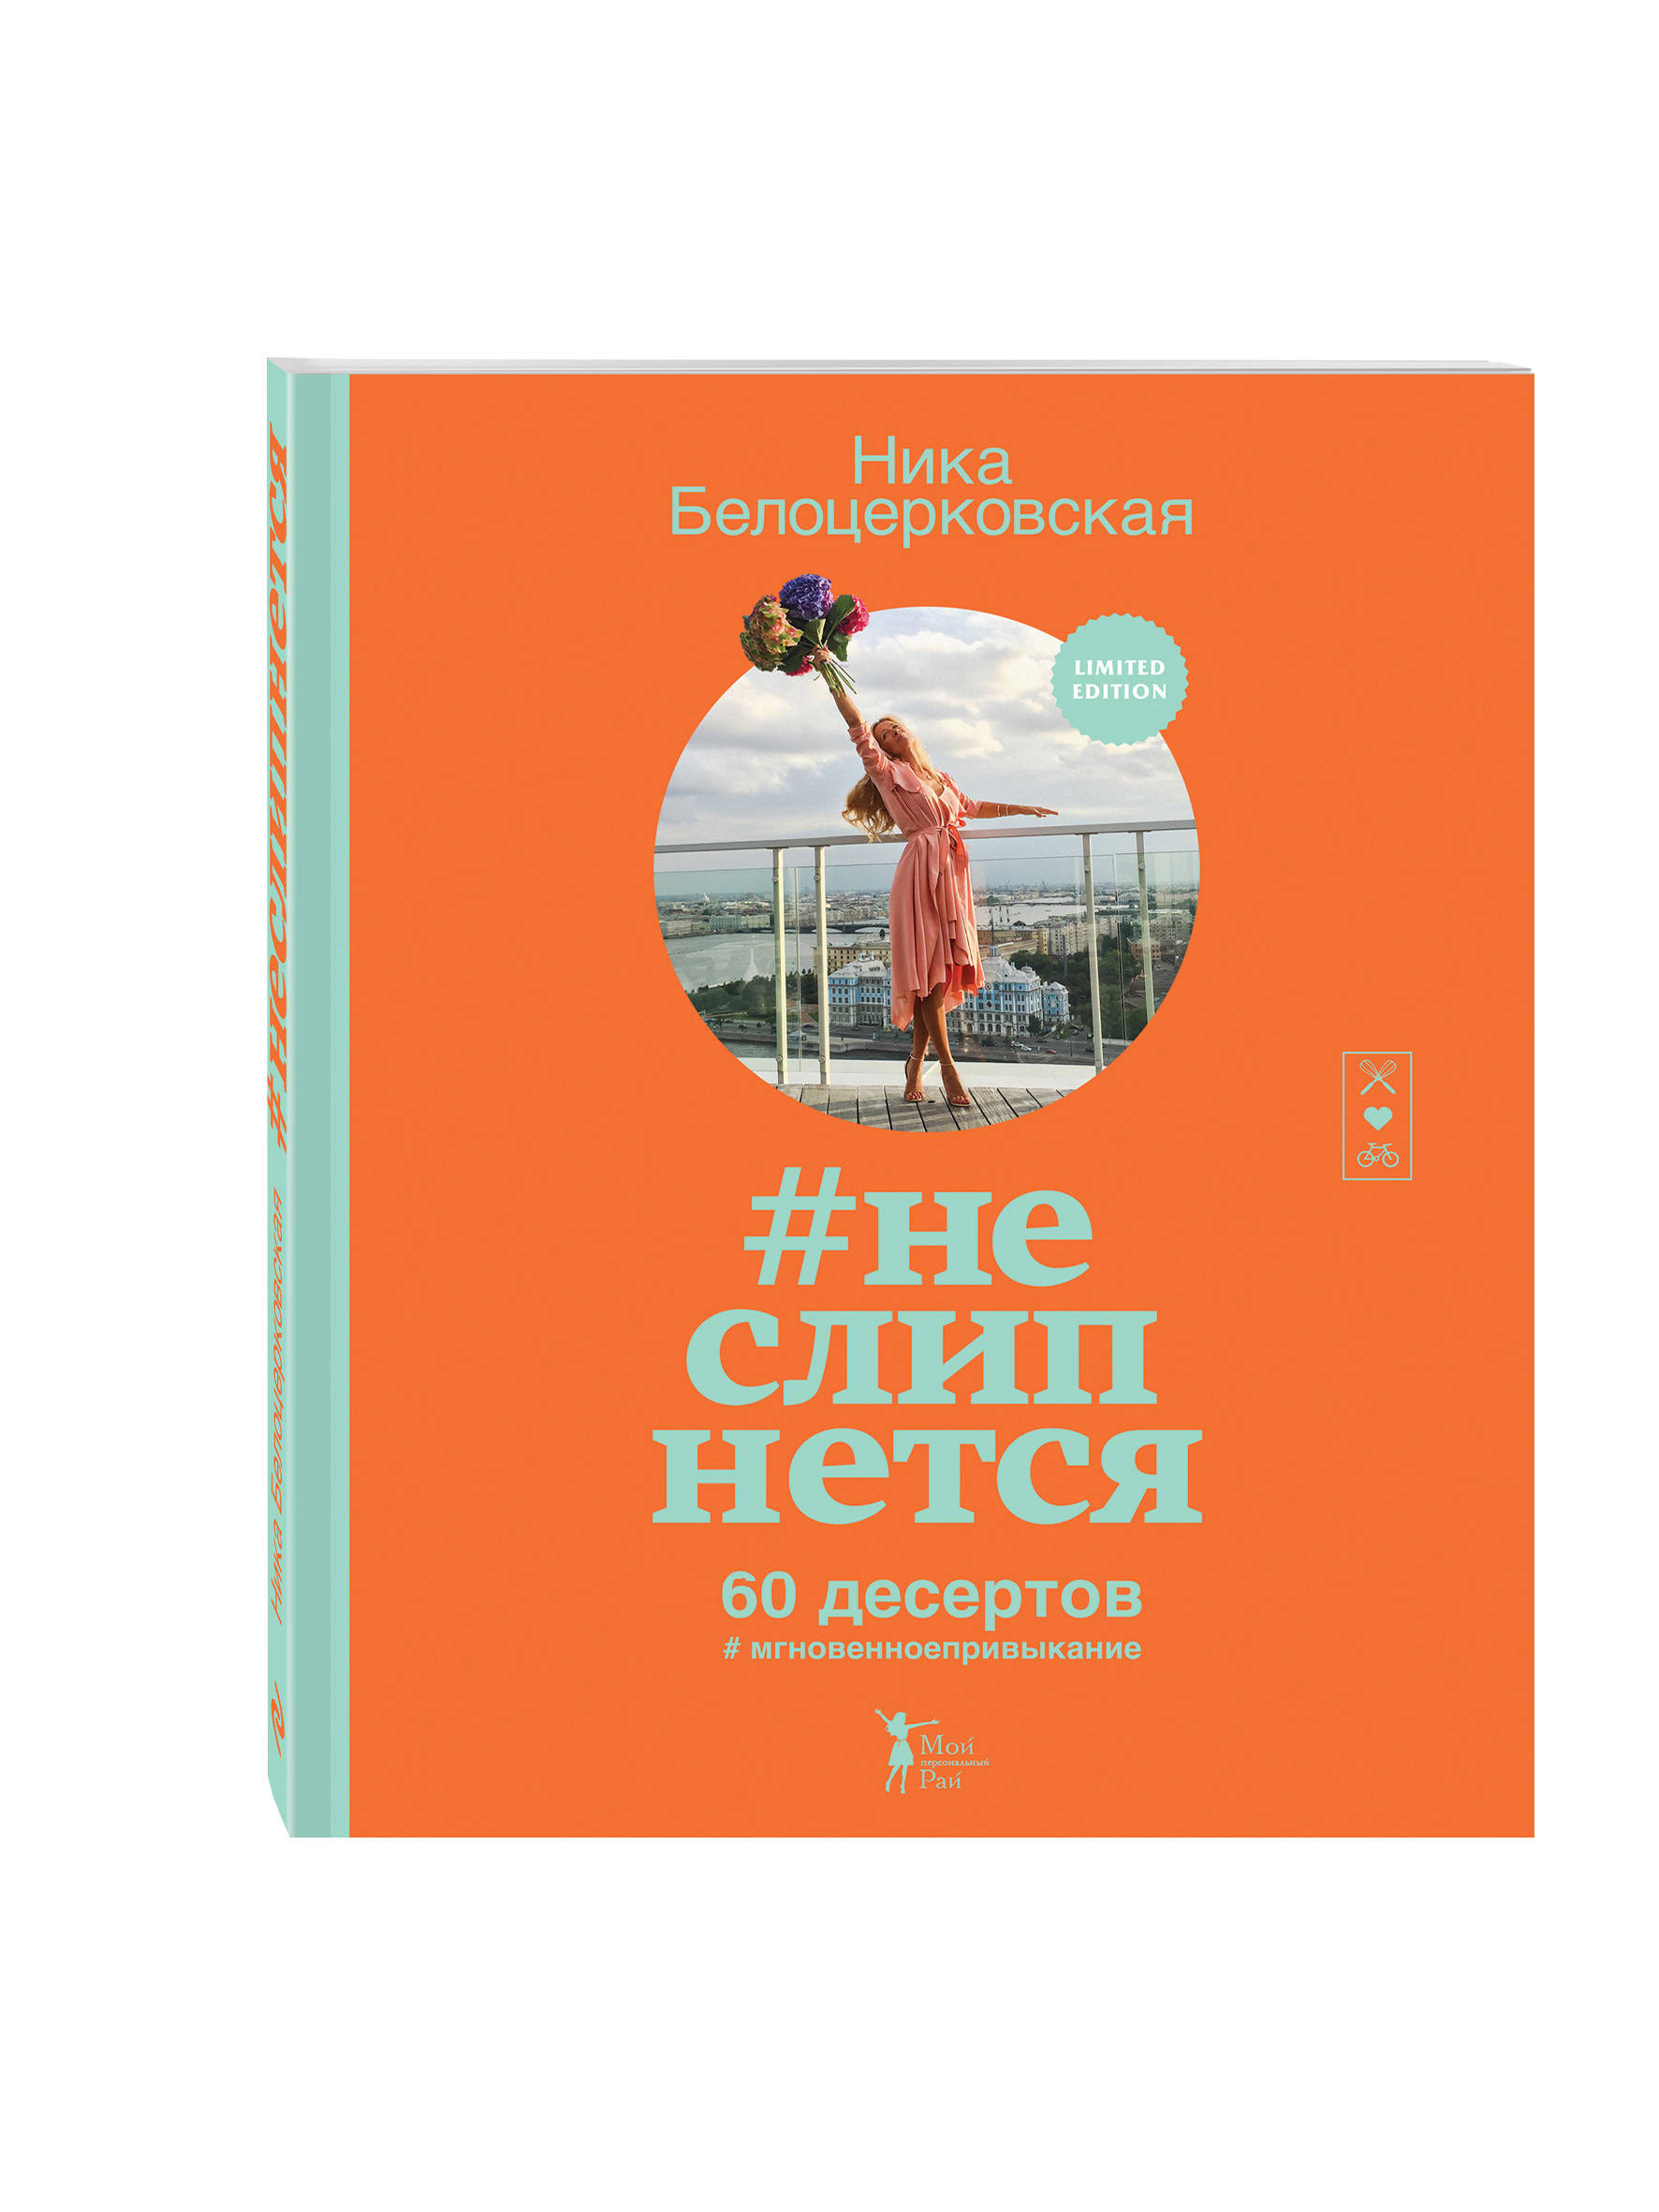 https://cdn.eksmo.ru/v2/ITD000000000805276/COVER/cover13d.jpg